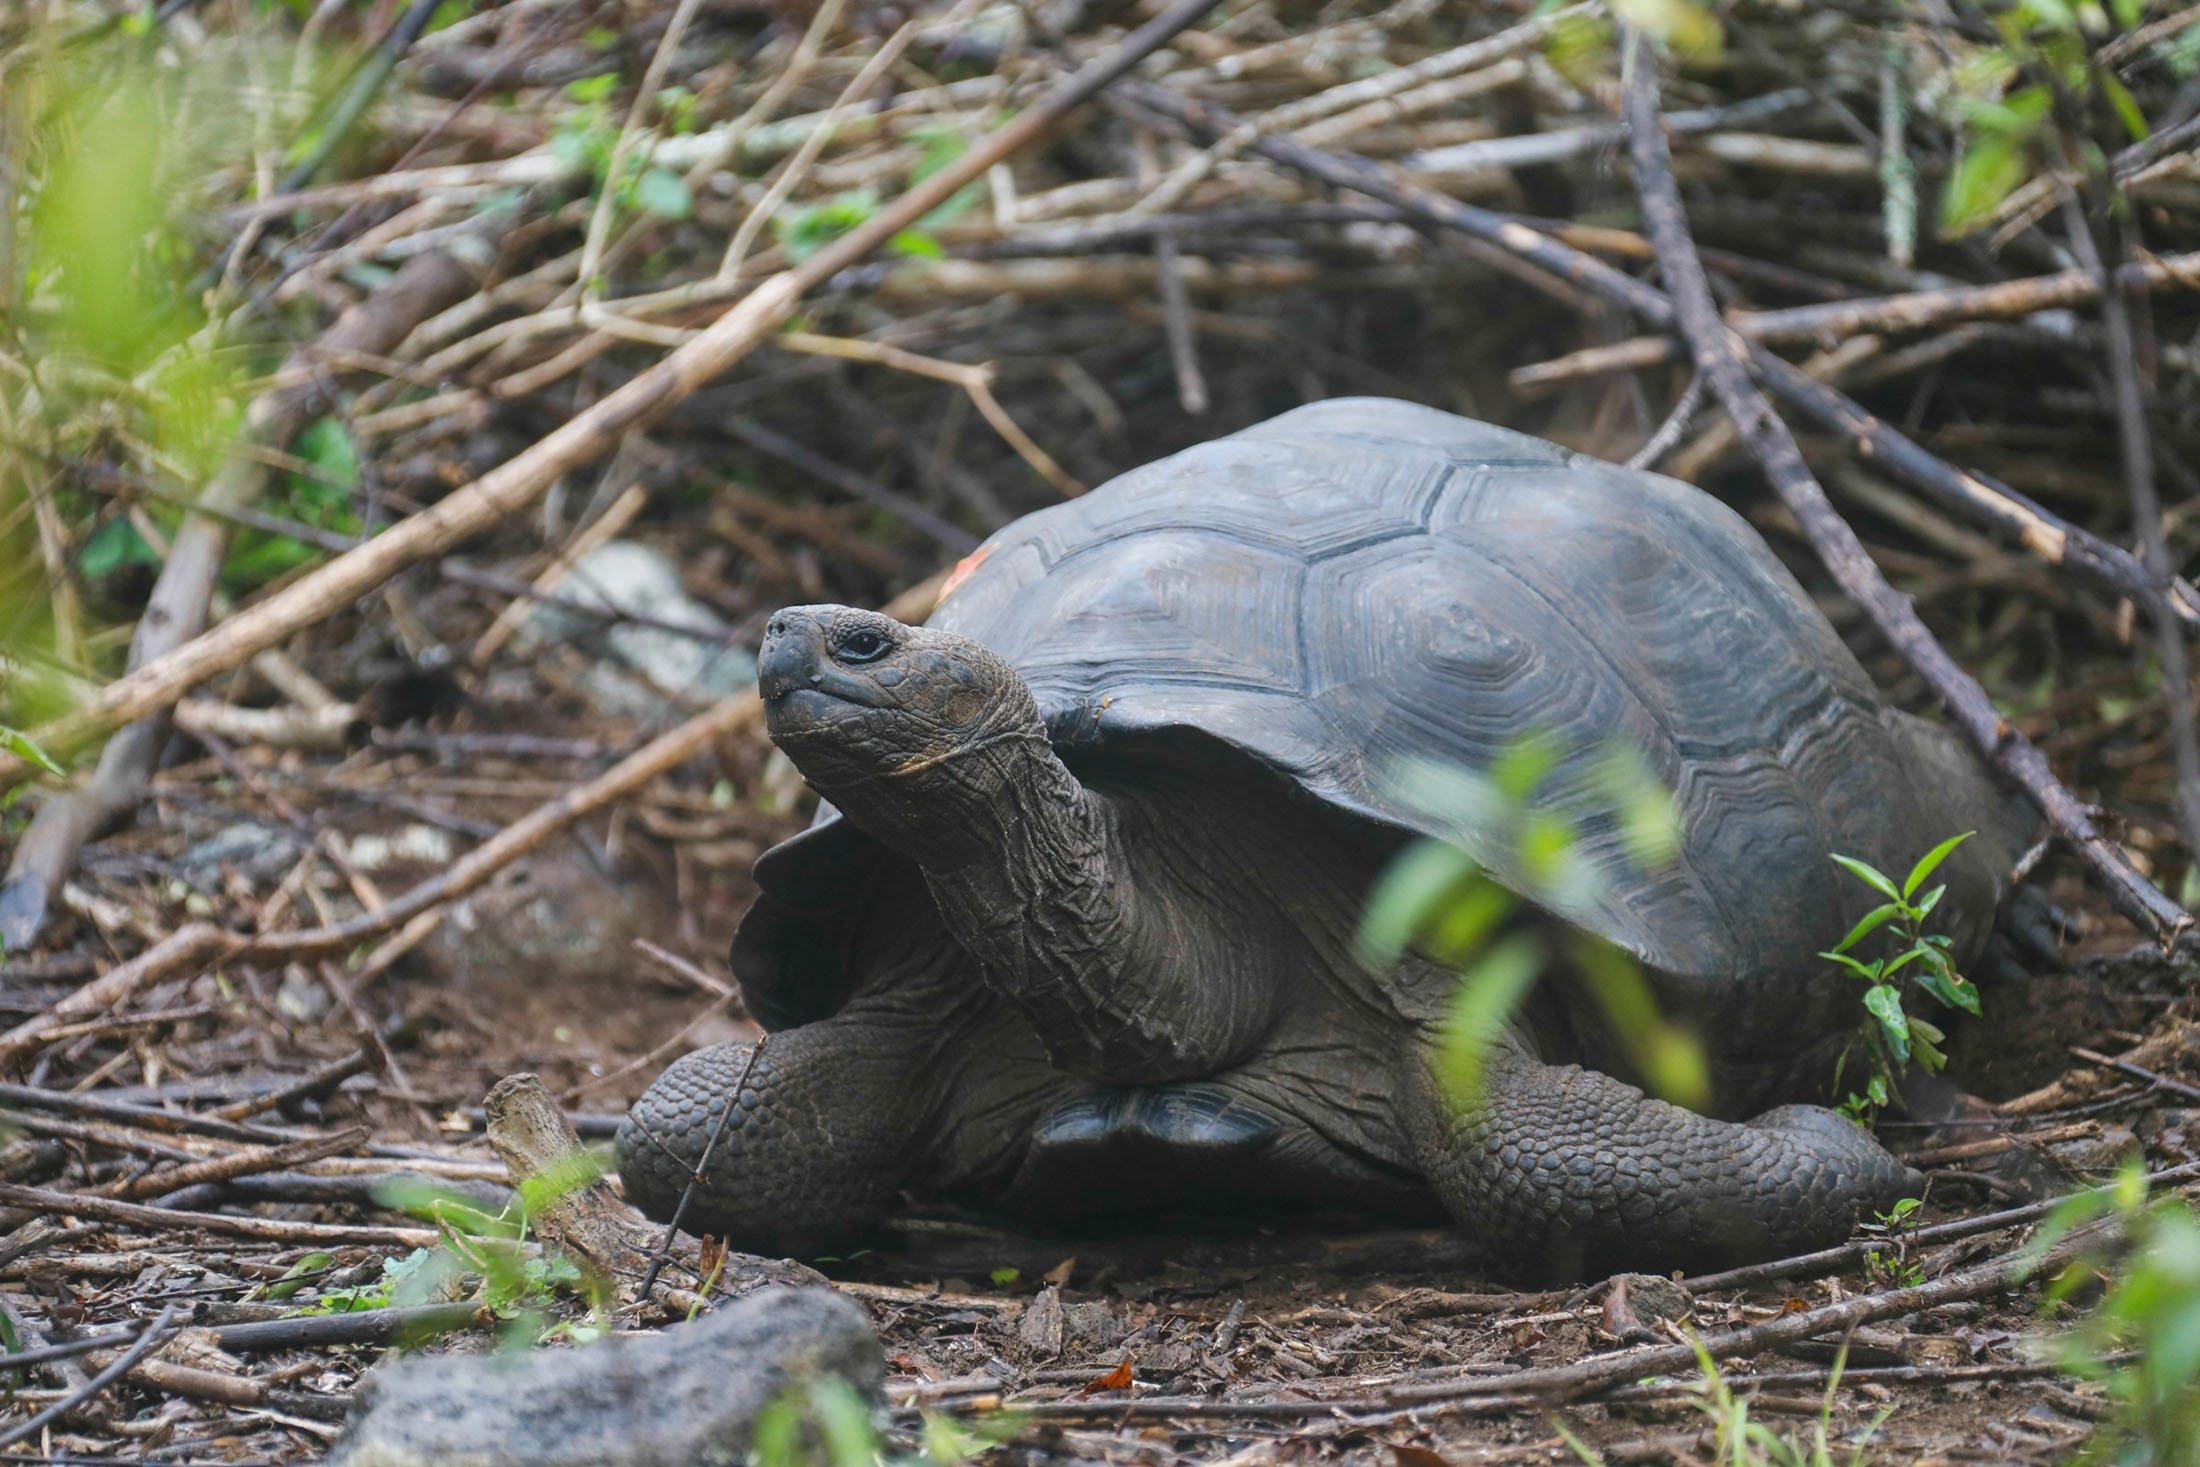 Seekor kura-kura, yang sebelumnya diidentifikasi sebagai Chelonoidis chathamensis, terlihat di pulau San Cristobal, Kepulauan Galapagos, Ekuador, 12 September 2018. (Foto Reuters)